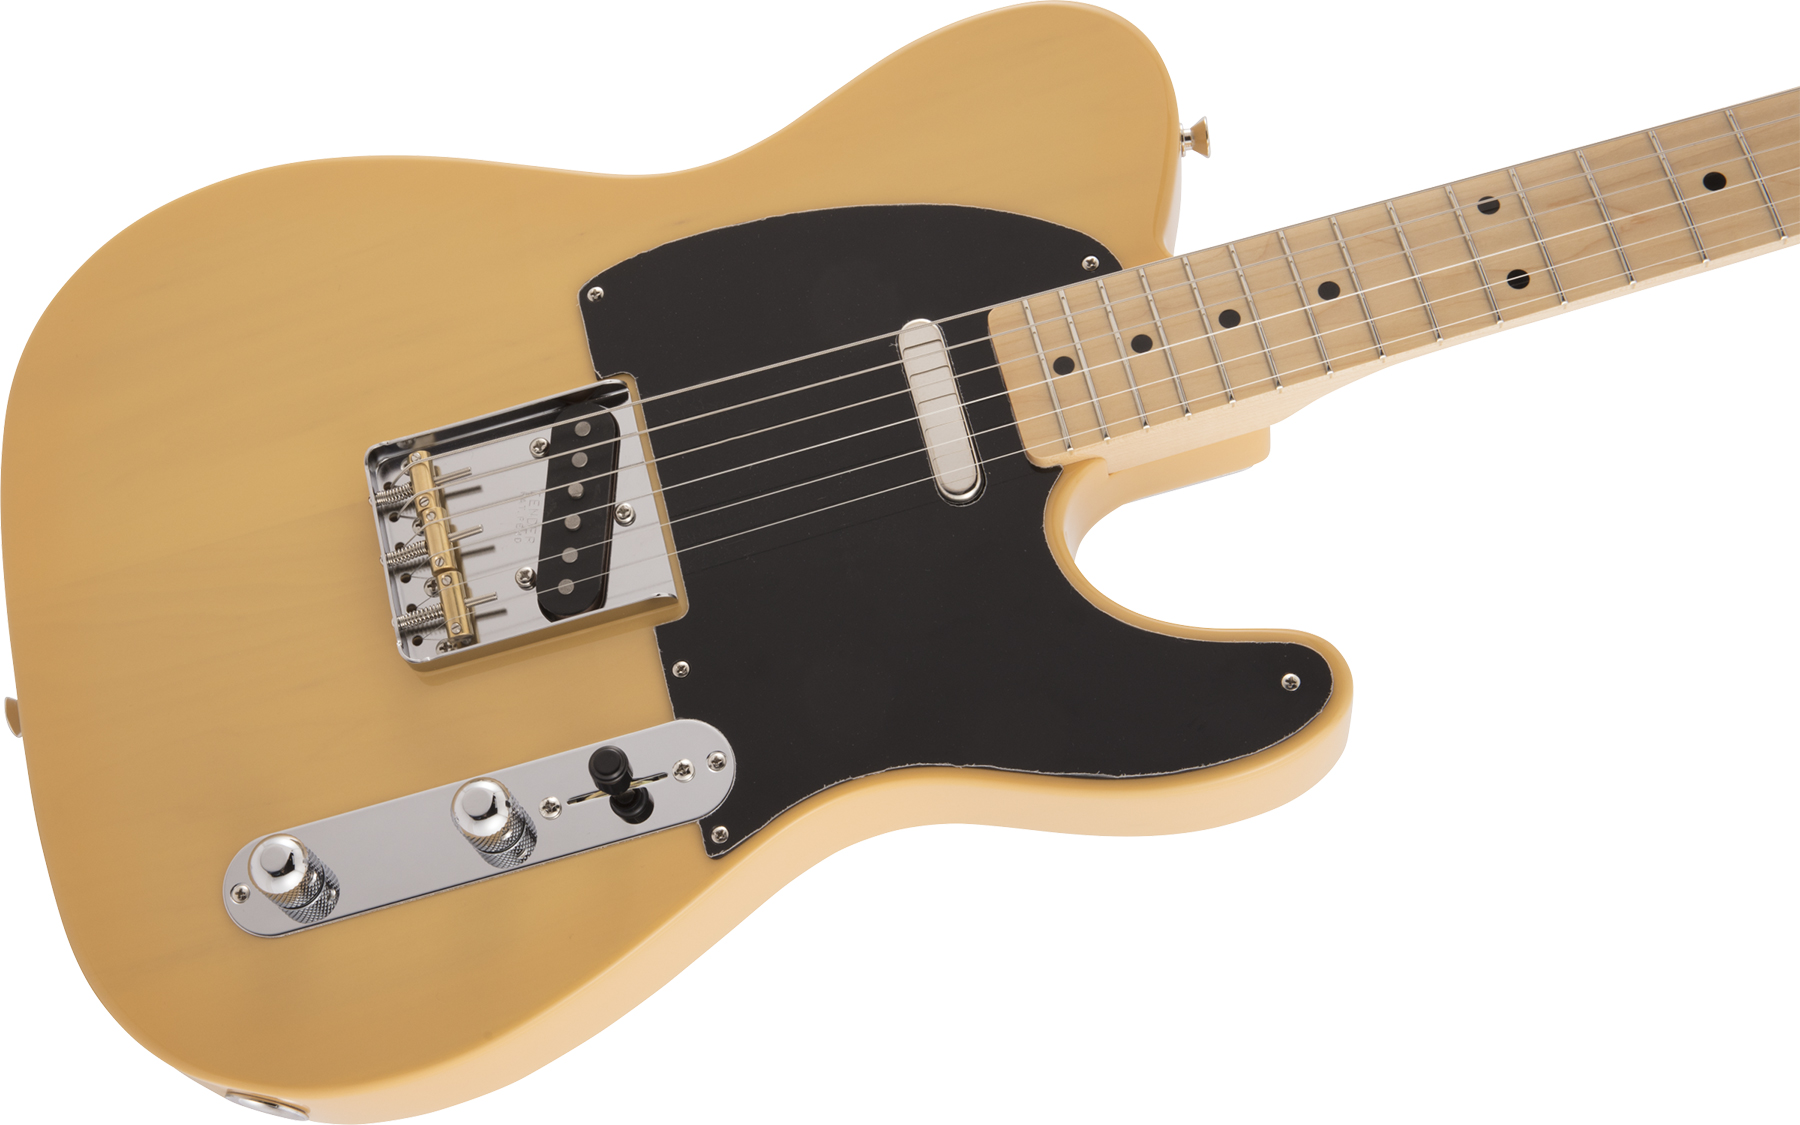 Fender Tele Traditional 50s Jap Mn - Butterscotch Blonde - E-Gitarre in Teleform - Variation 2